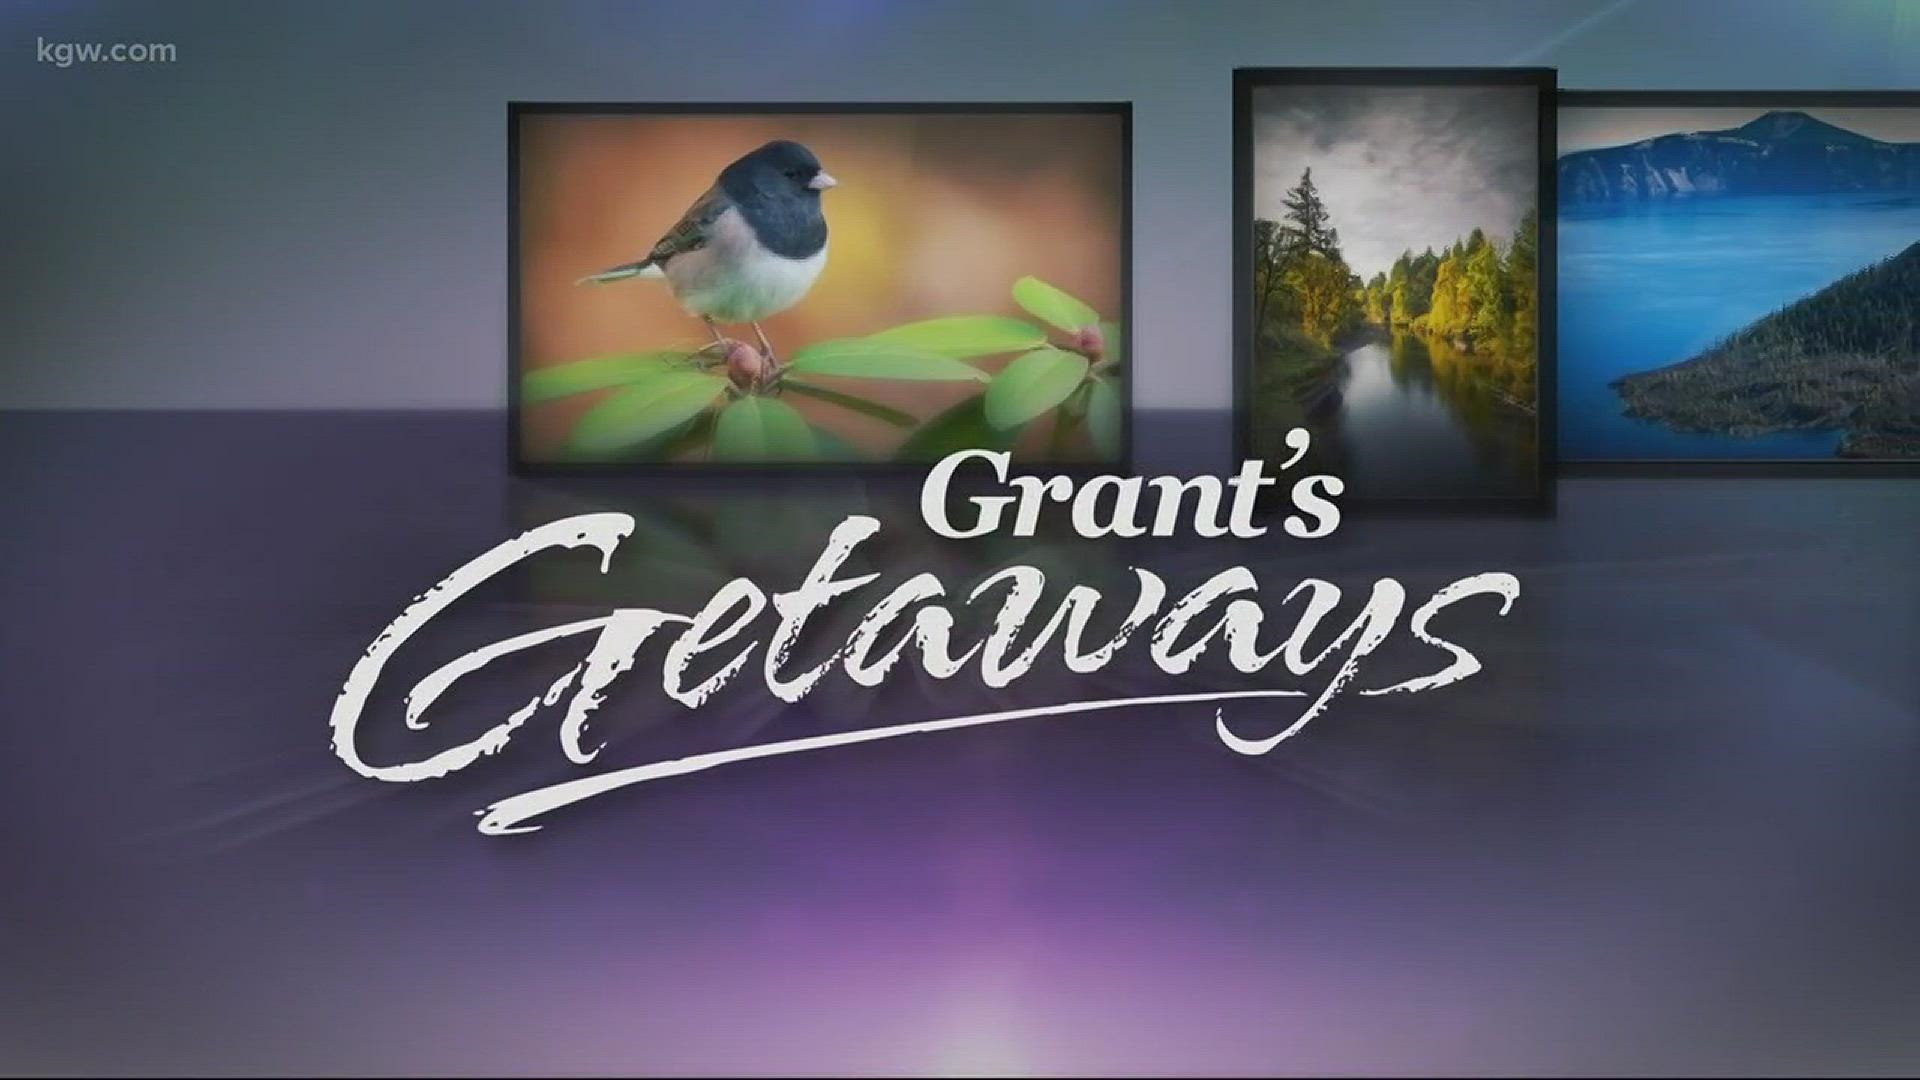 Grant's Getaways: Ki-a-Kuts Falls